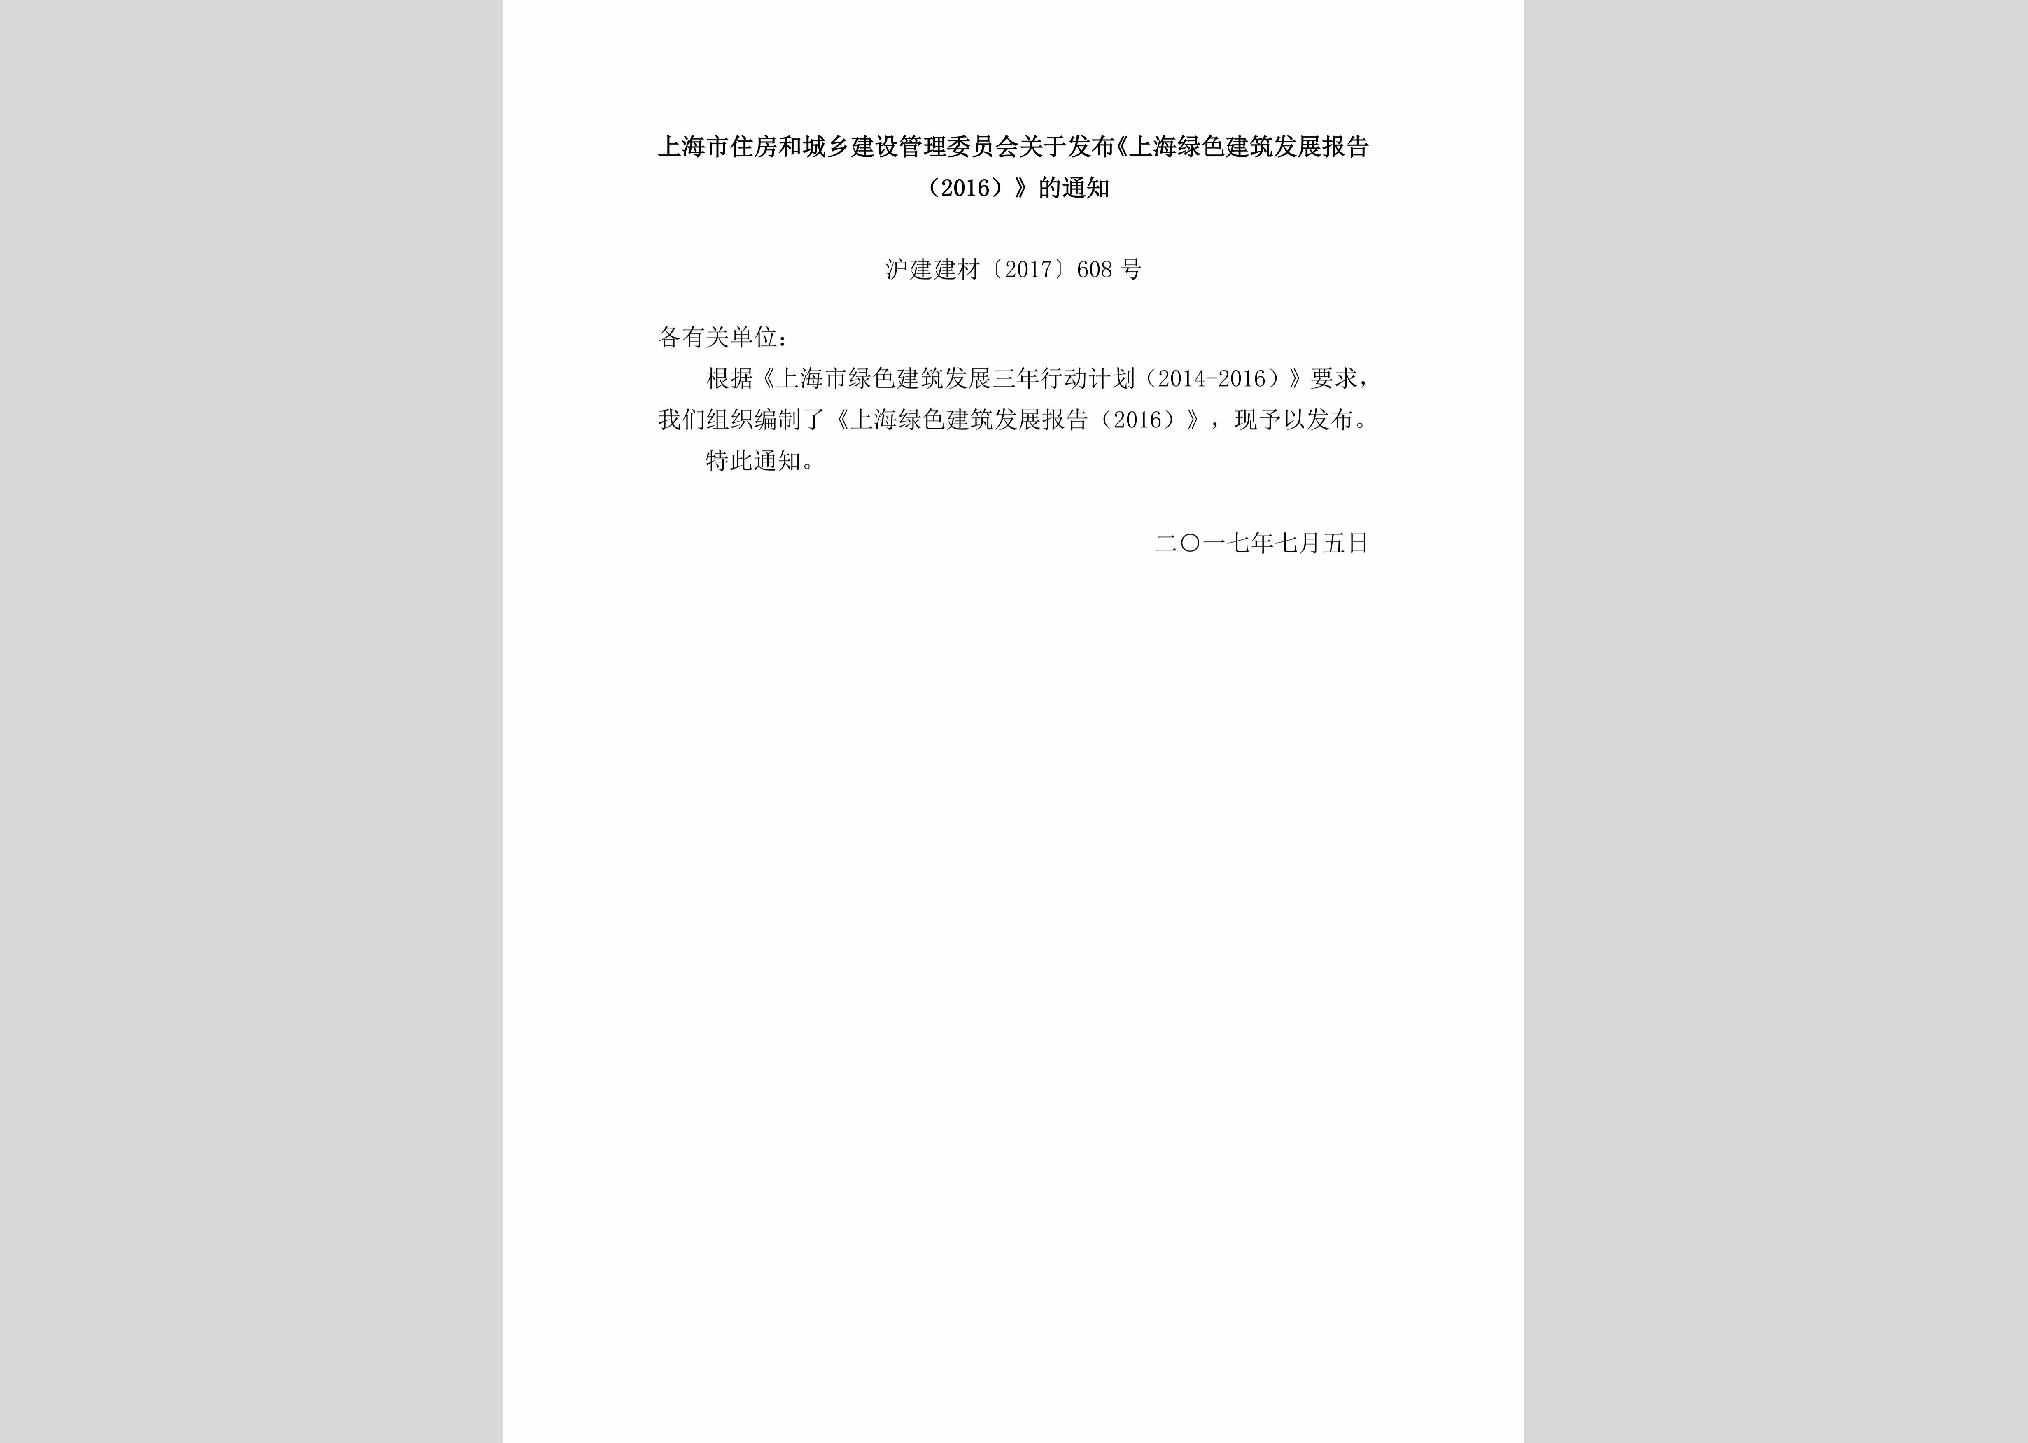 沪建建材[2017]608号：上海市住房和城乡建设管理委员会关于发布《上海绿色建筑发展报告（2016）》的通知